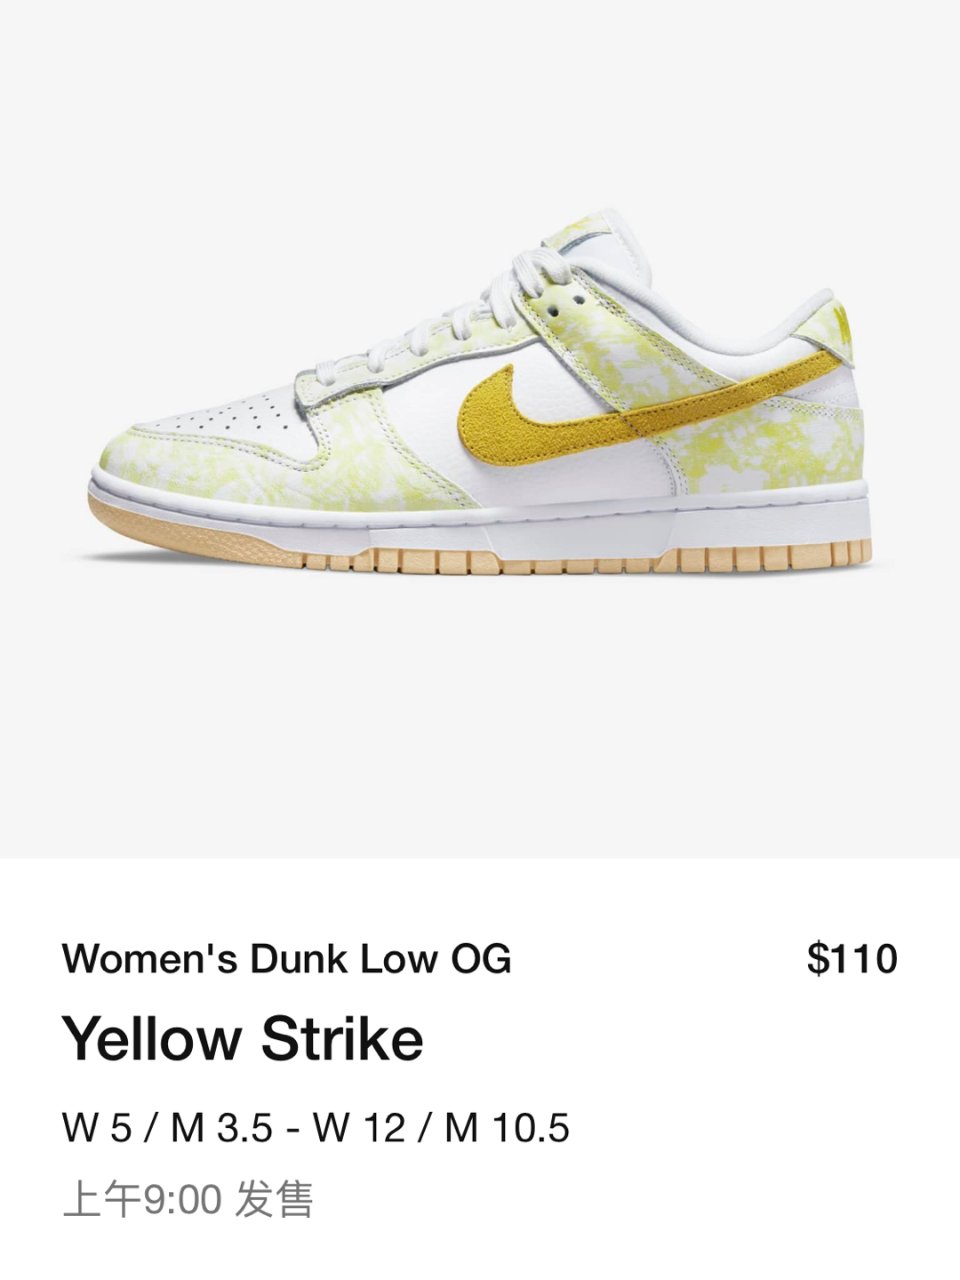 Nike dunk low og